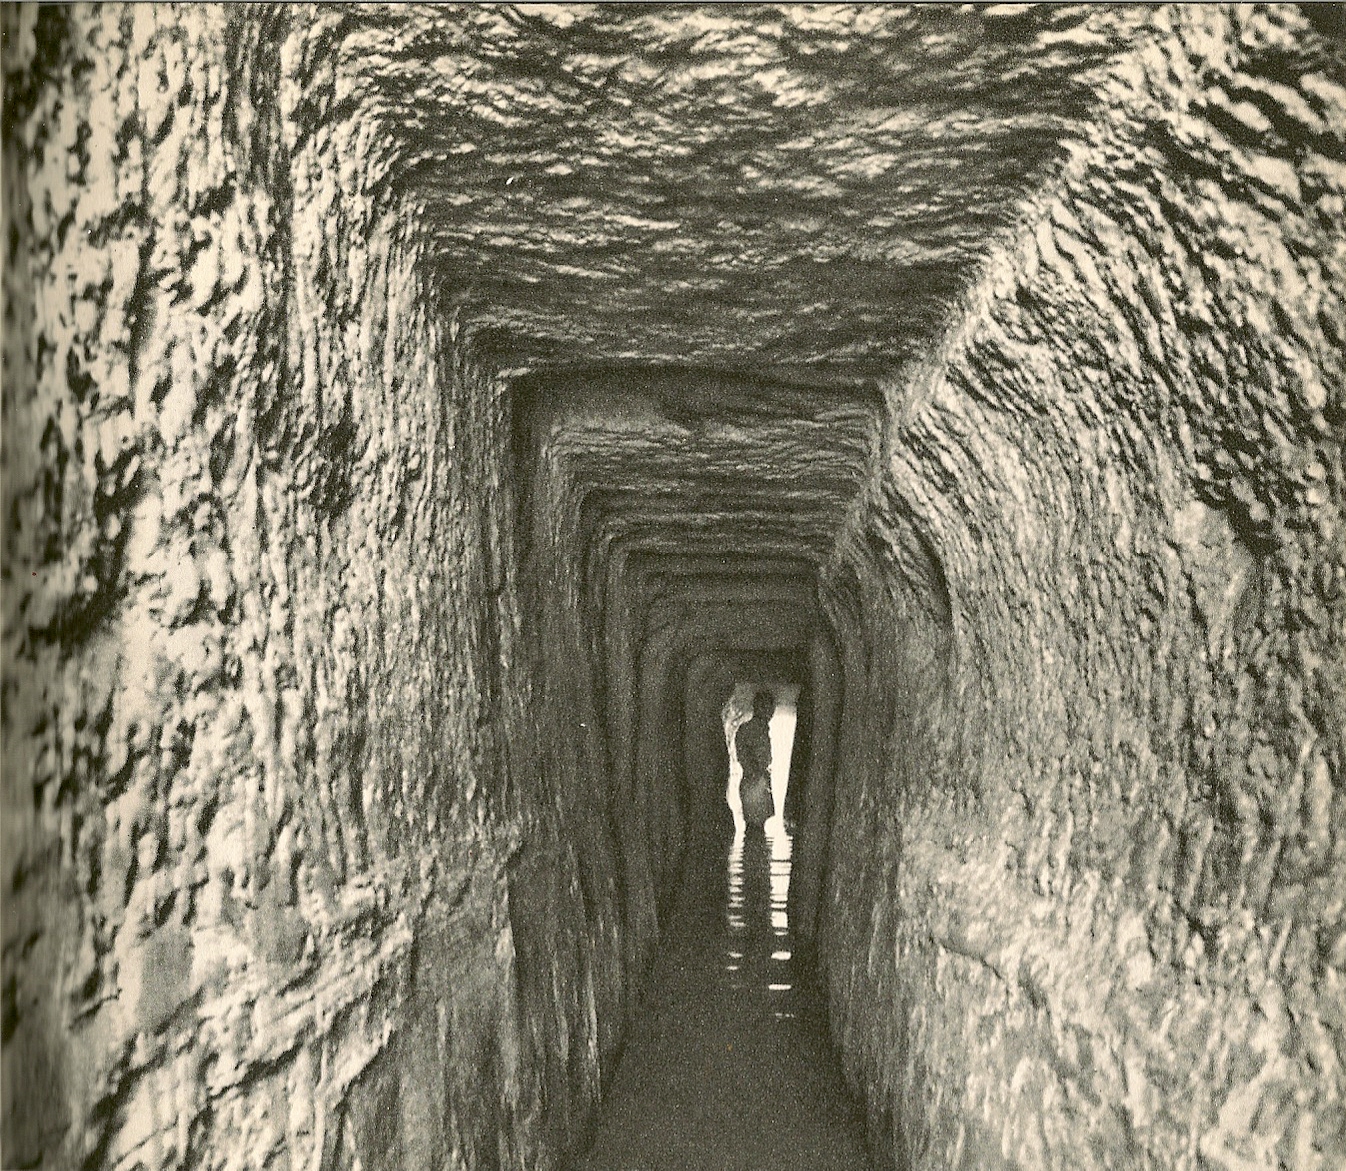 Hezekiah's tunnel